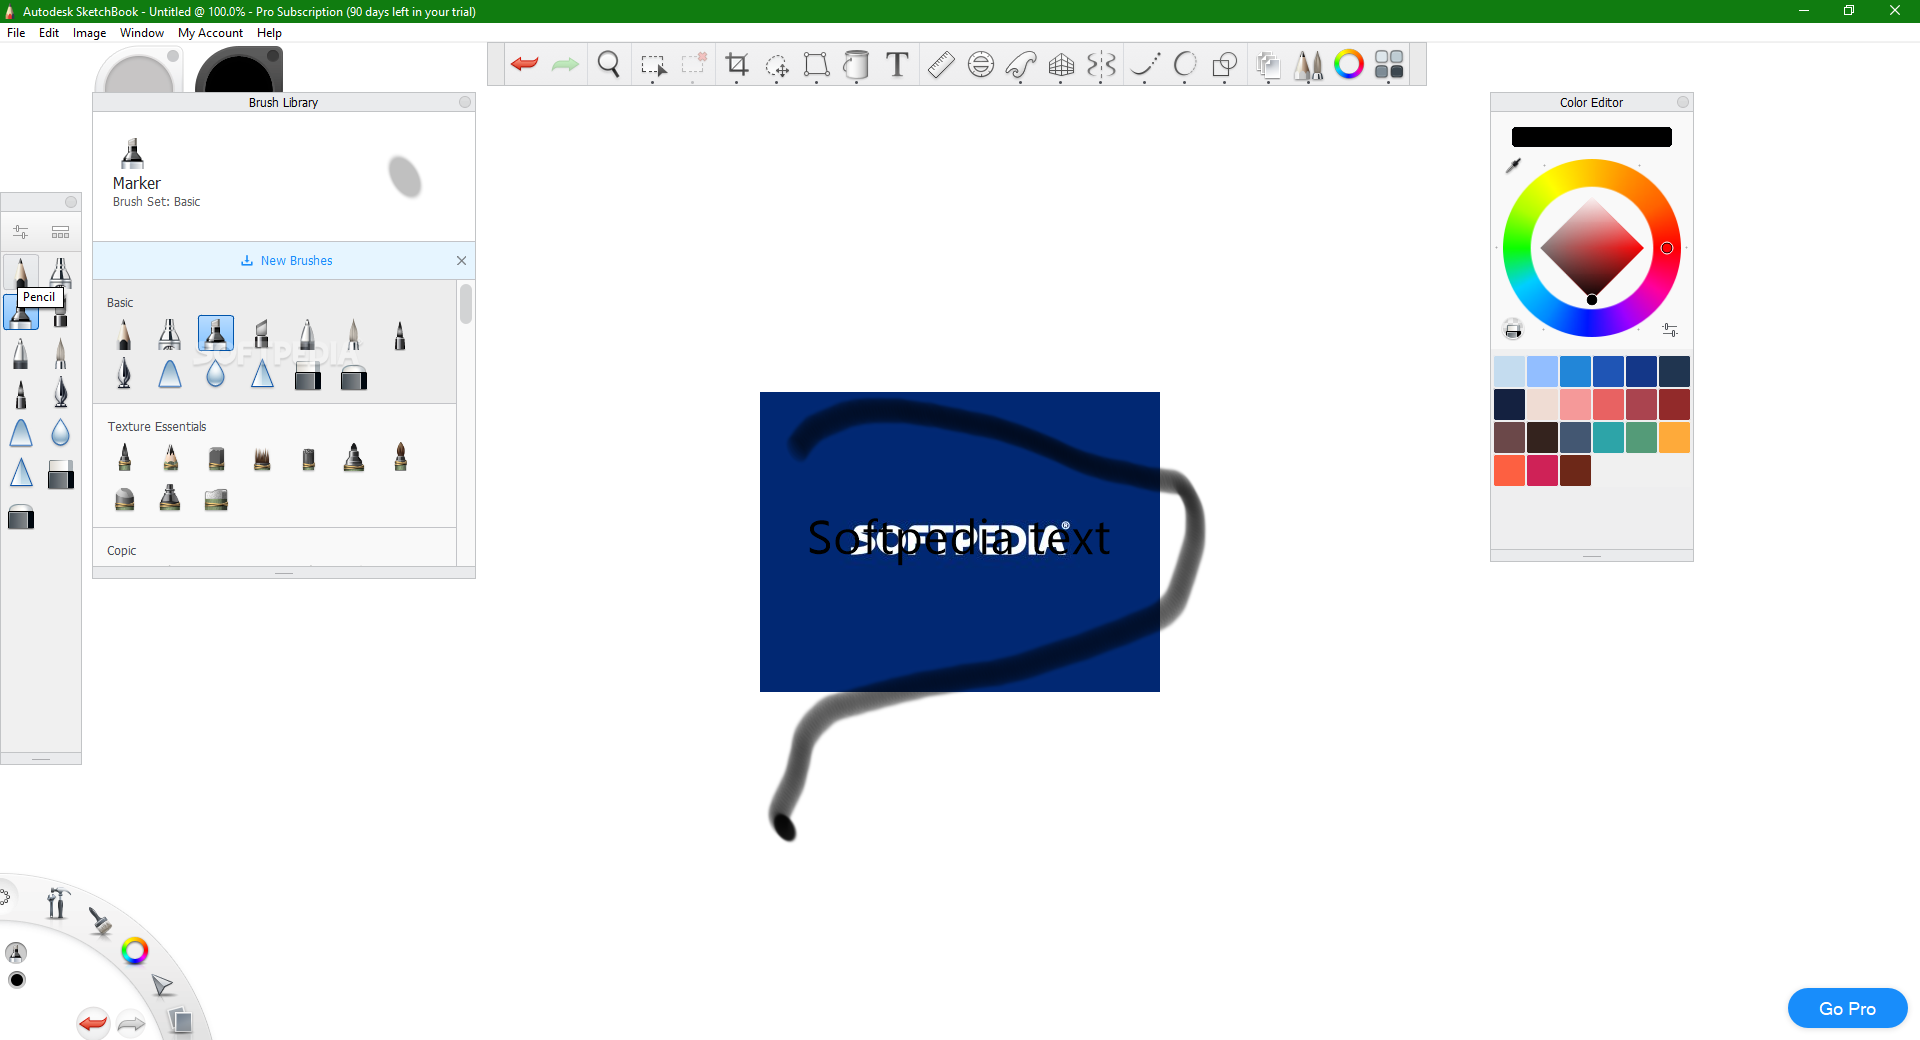 sketchbook download for windows 10